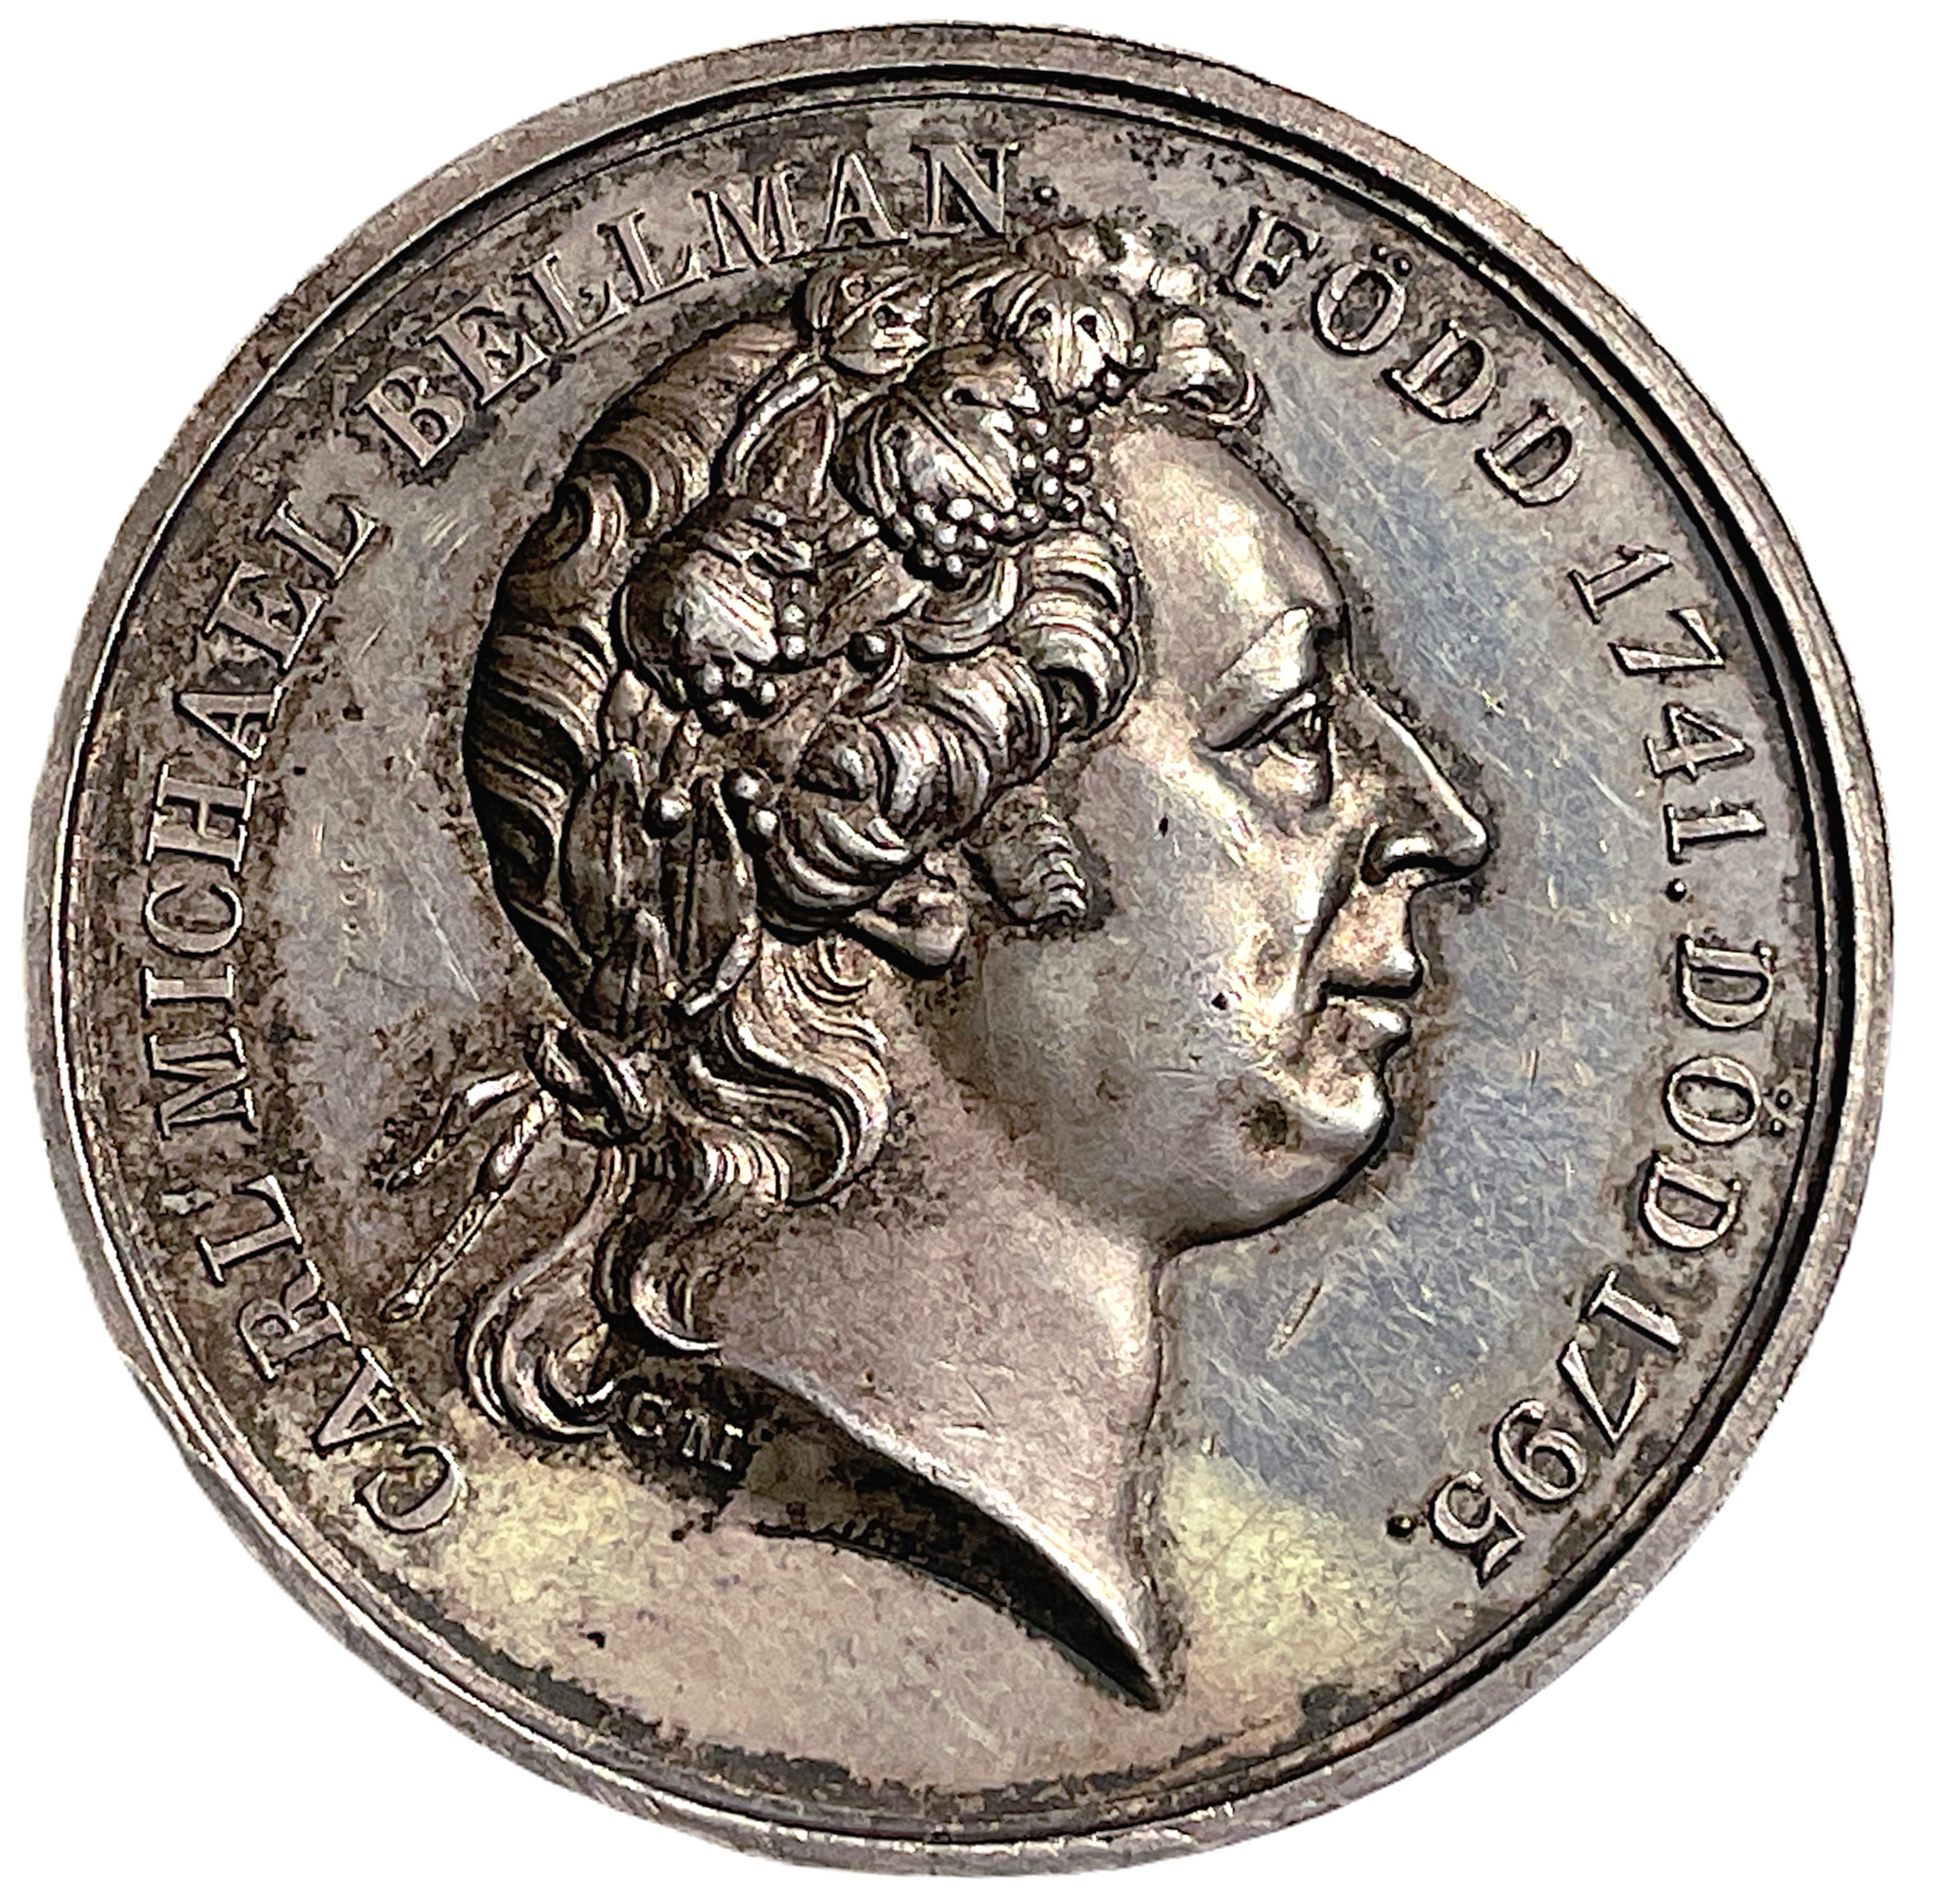 Carl Michael Bellman (1740-1795) av Carl Magnus Mellgren 1833 - En av Sveriges nationalskalder